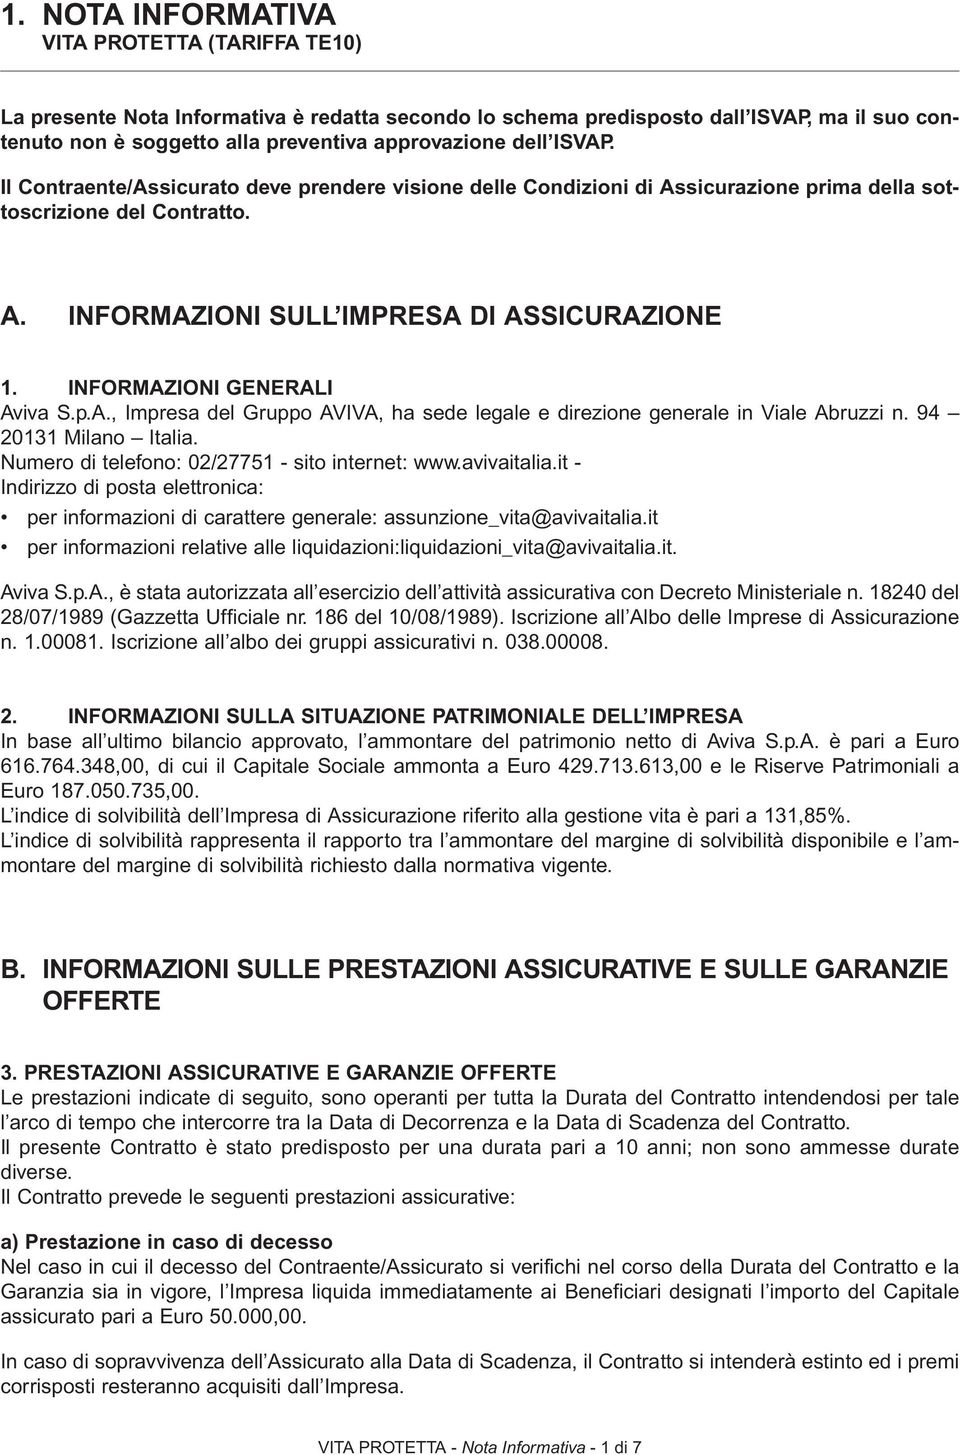 INFORMAZIONI GENERALI Aviva S.p.A., Impresa del Gruppo AVIVA, ha sede legale e direzione generale in Viale Abruzzi n. 94 20131 Milano Italia. Numero di telefono: 02/27751 - sito internet: www.